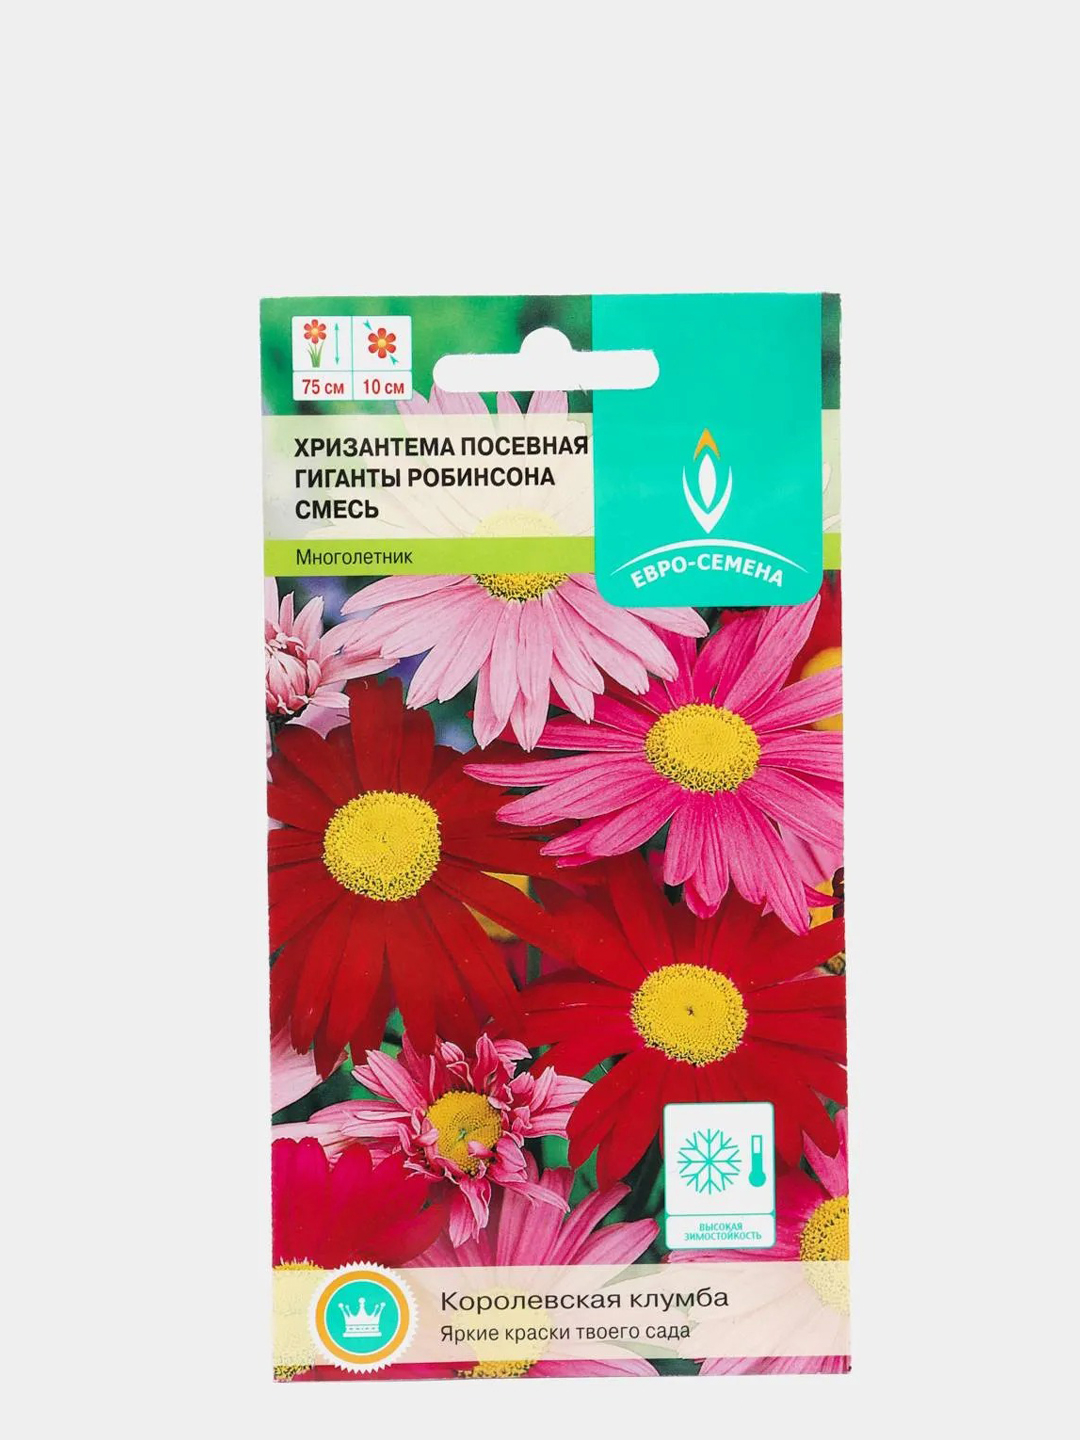 Хризантема Гиганты Робинсона смесь 0,1г / Семена цветов за 16.8 .